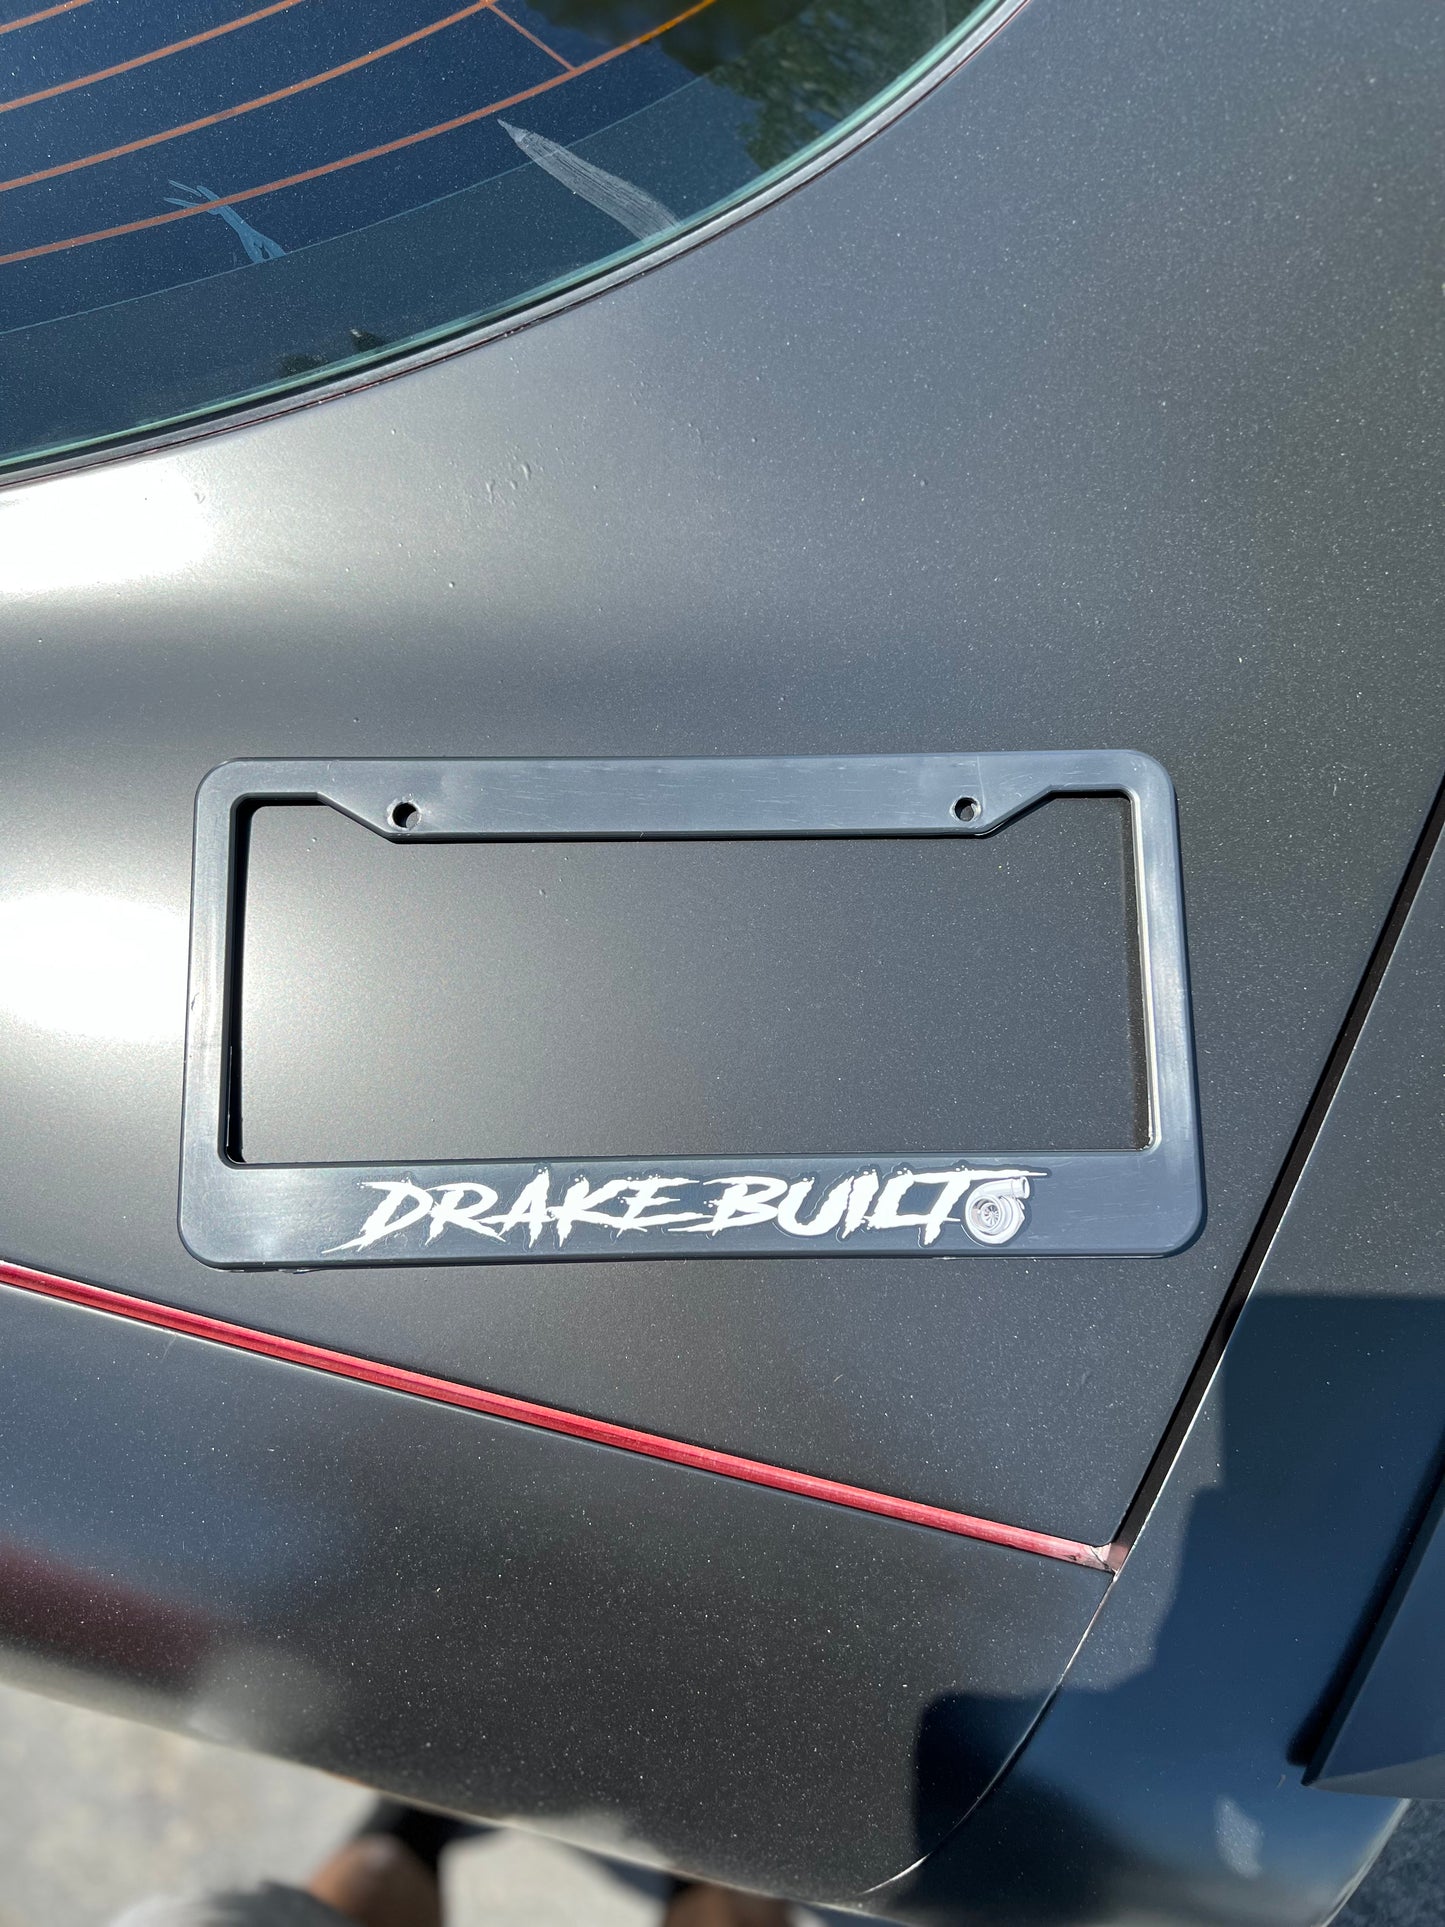 Drake Built License Plate Frame